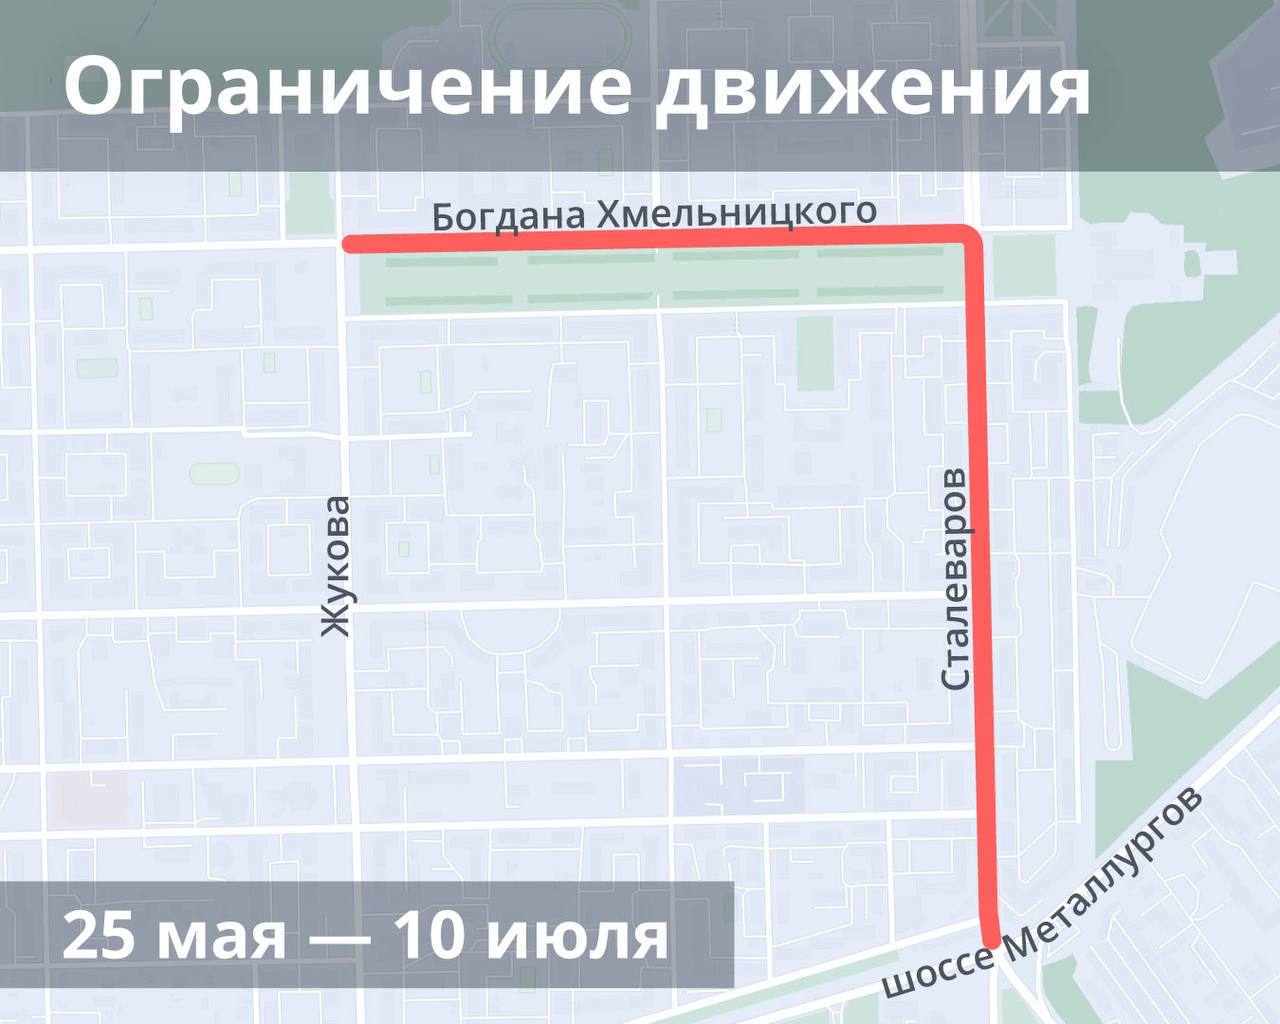  Николай Кожевников объявил о старте ремонта двух «убитых» дорог в Металлургическом районе